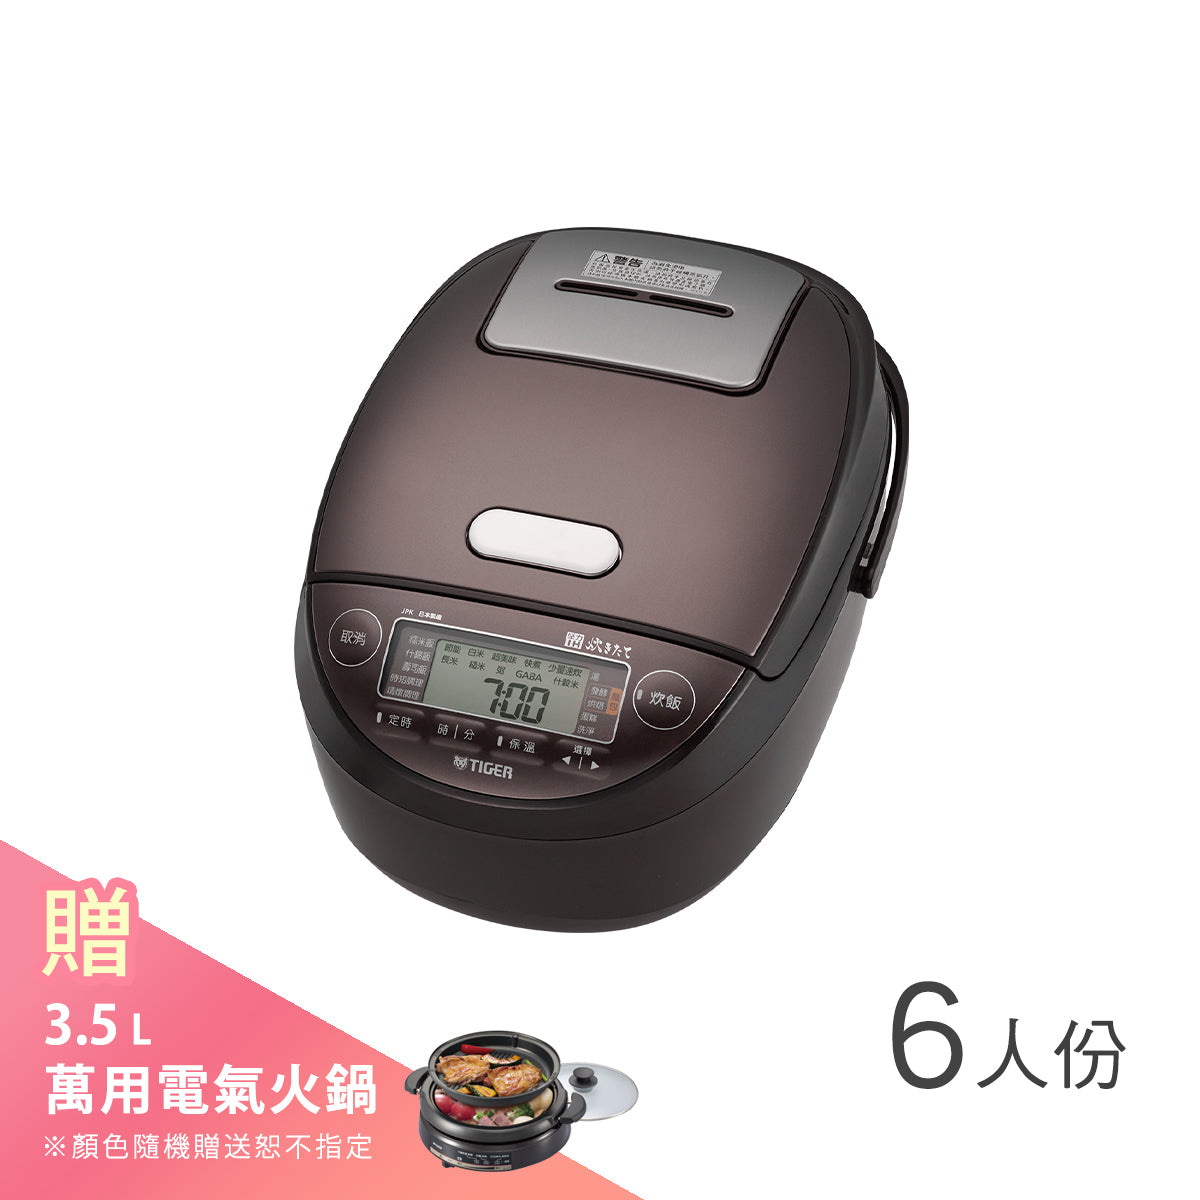 【日本製】6人份 高火力壓力IH炊飯電子鍋 (JPK-G10R)